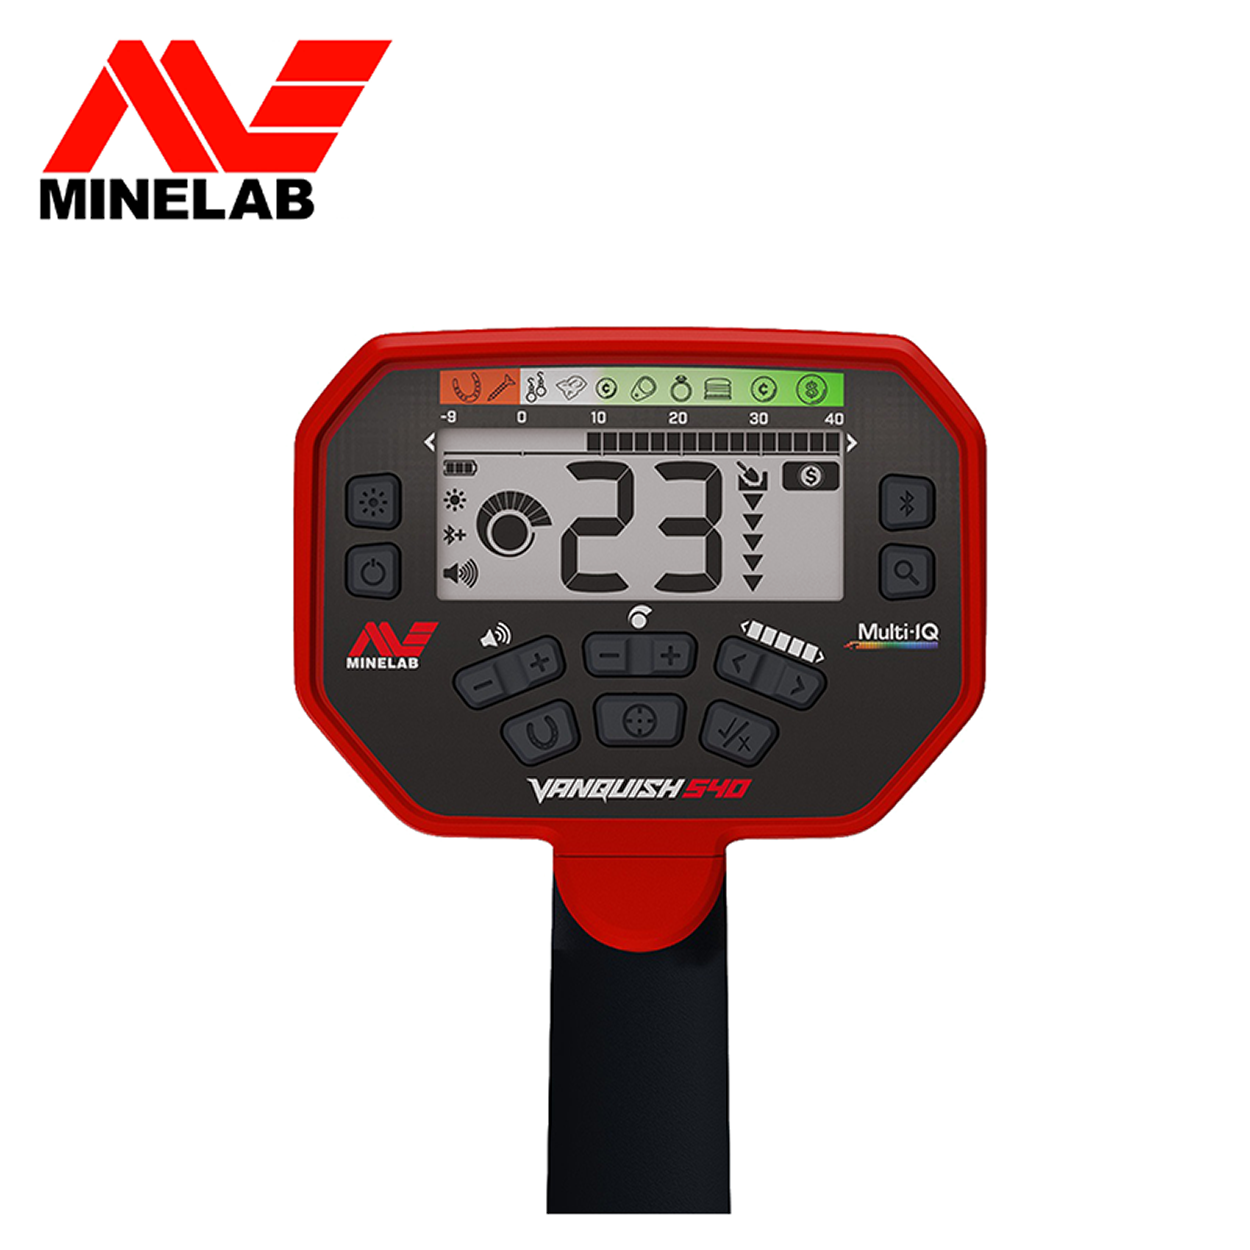 MINELAB Vanquish 540 Metalldetektor Multifrequenz Paket Pro